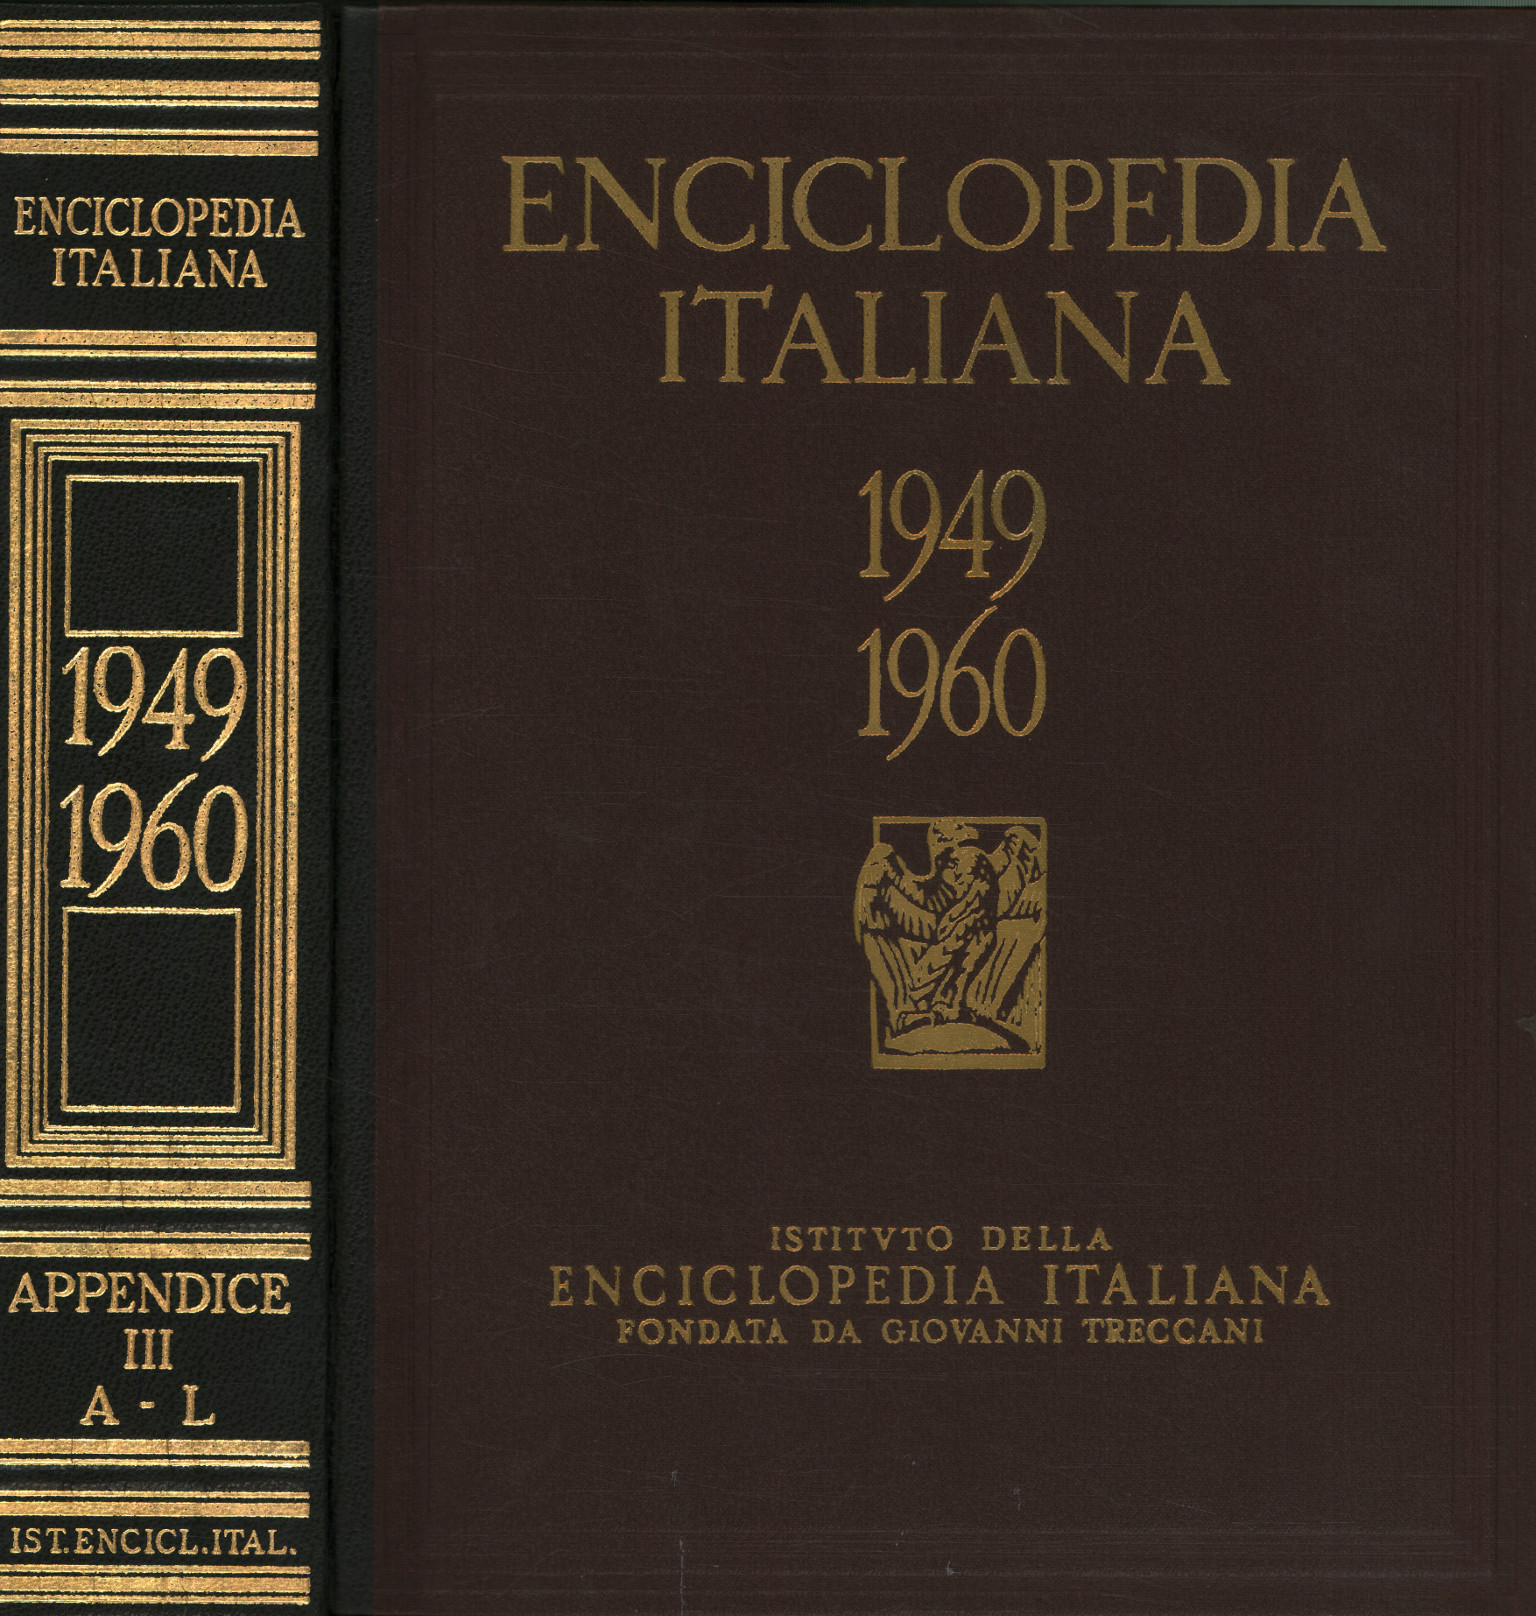 Enciclopedia italiana de letras científicas%, Enciclopedia italiana de letras científicas%